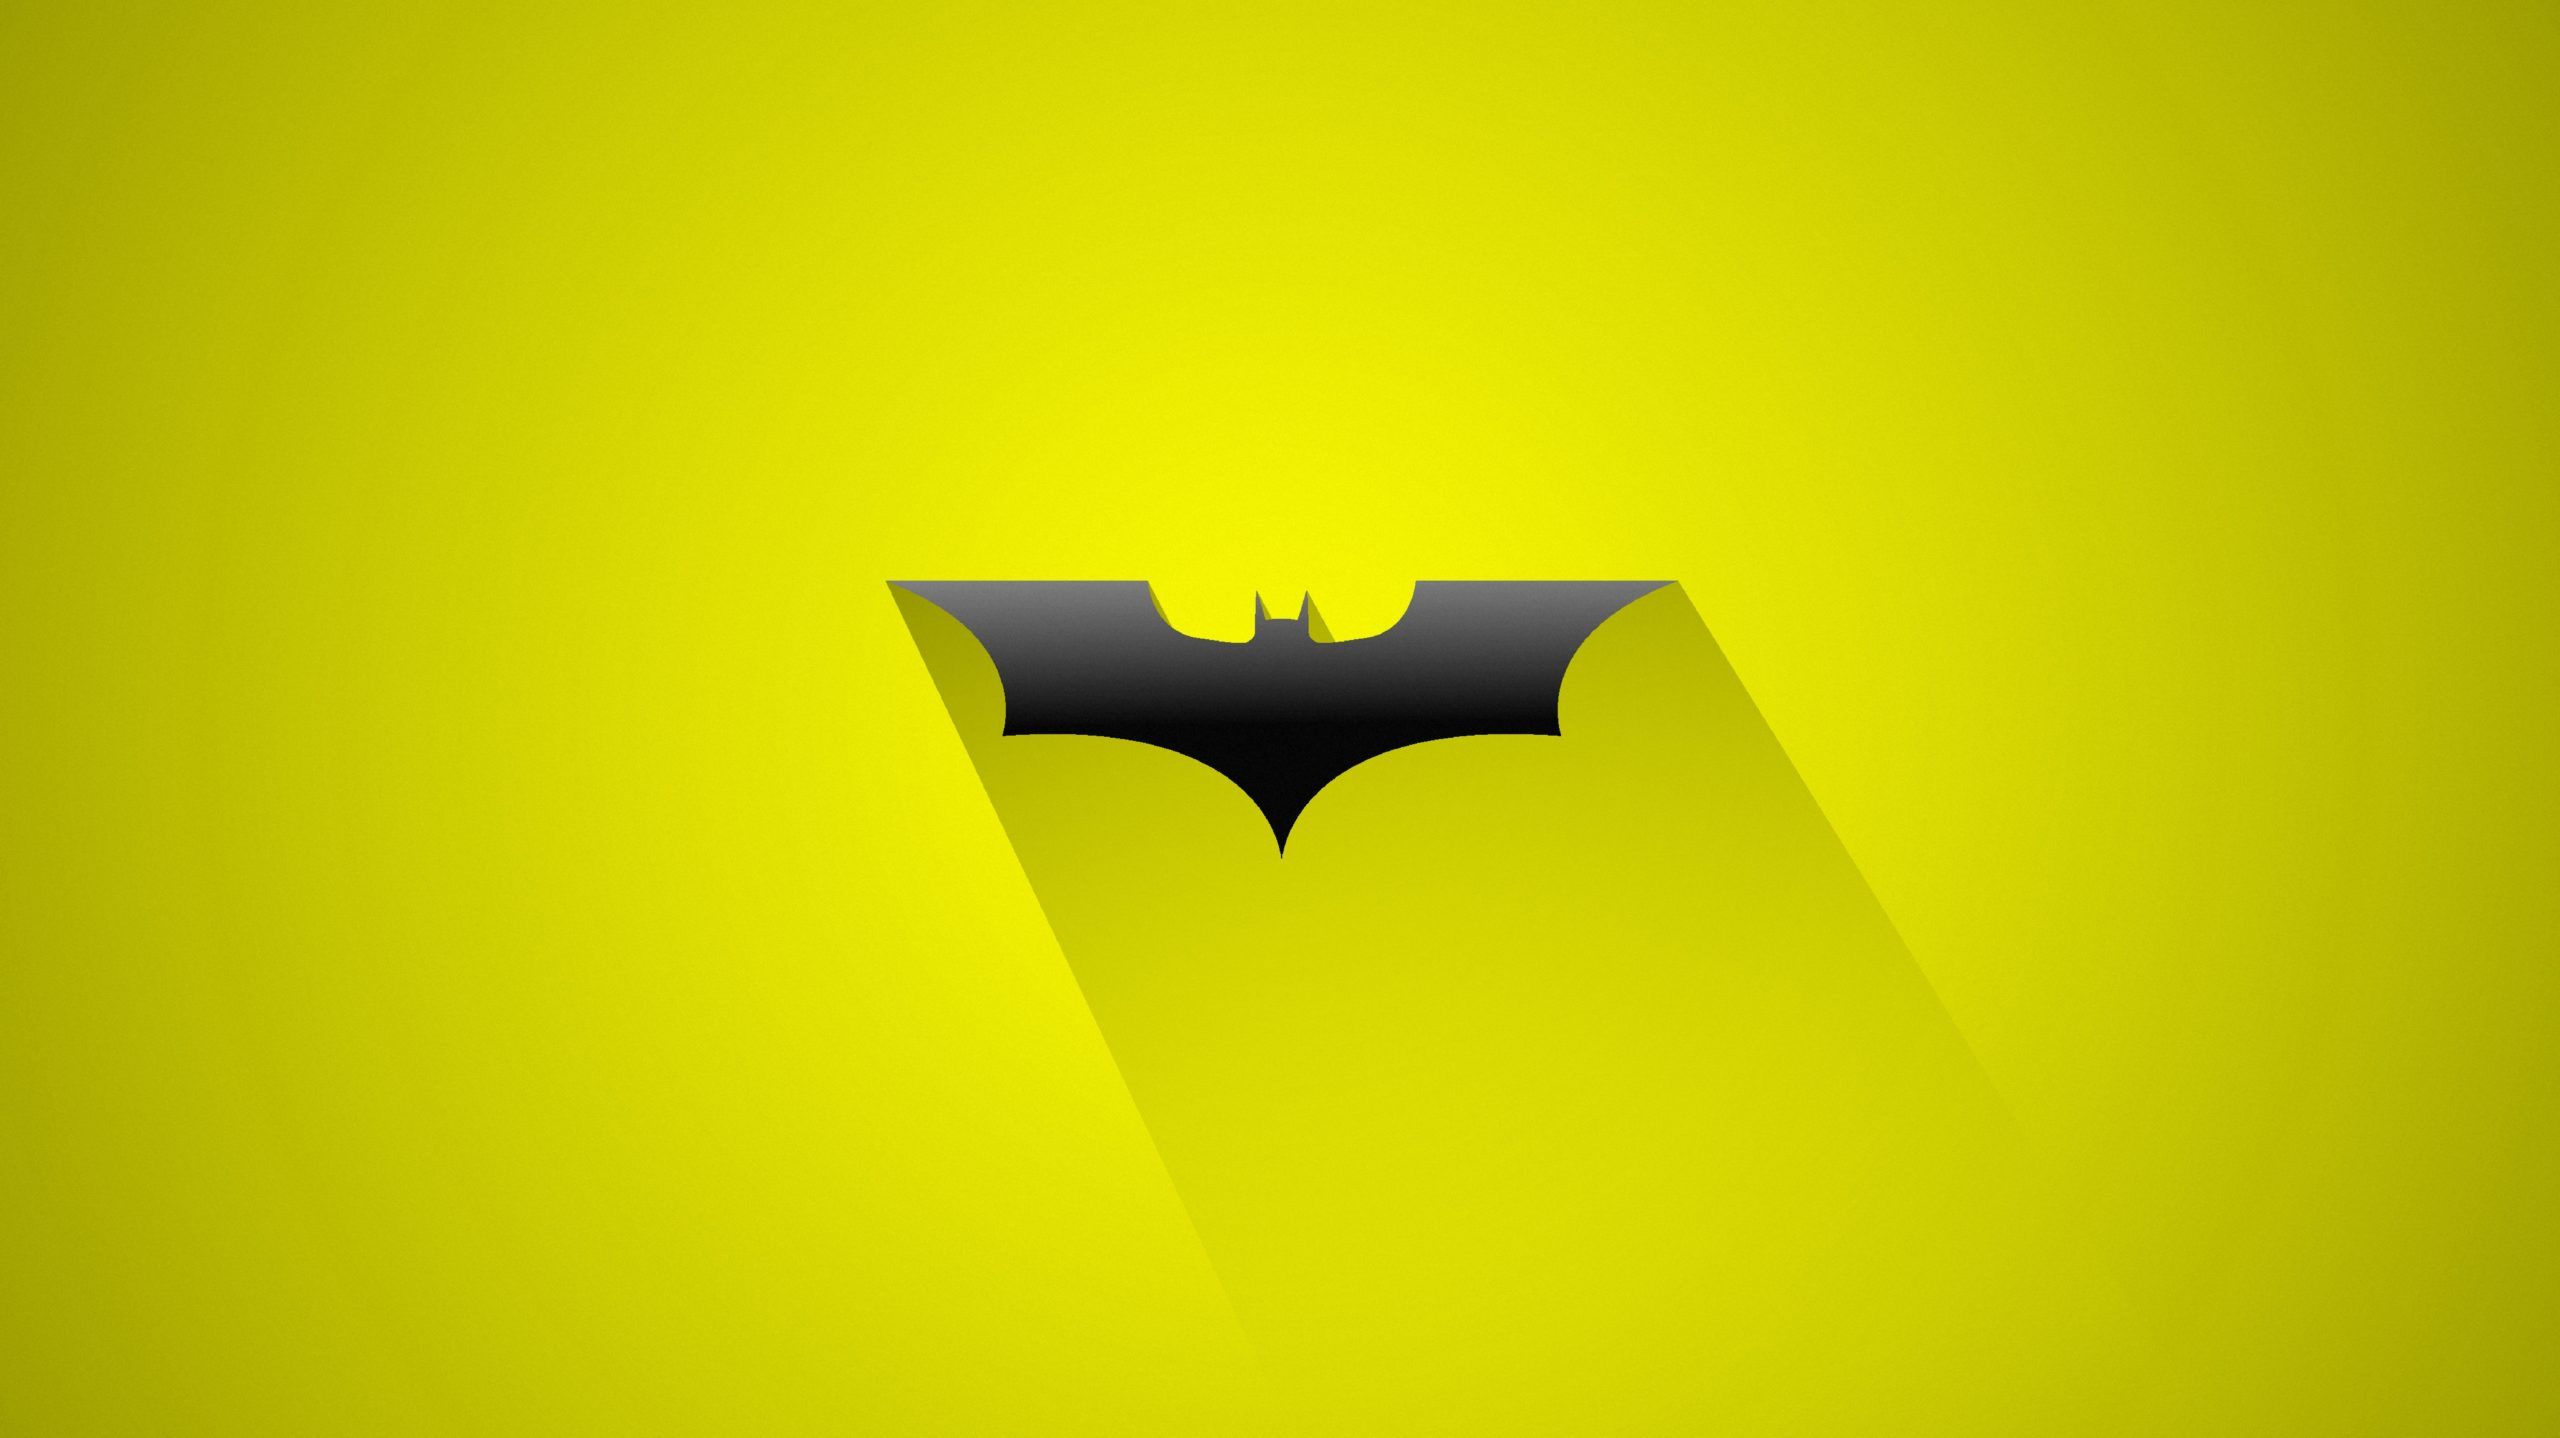 4K Batman 8k Logo 7982×4483 Hook. Batman, Batman wallpaper, Dc comics wallpaper